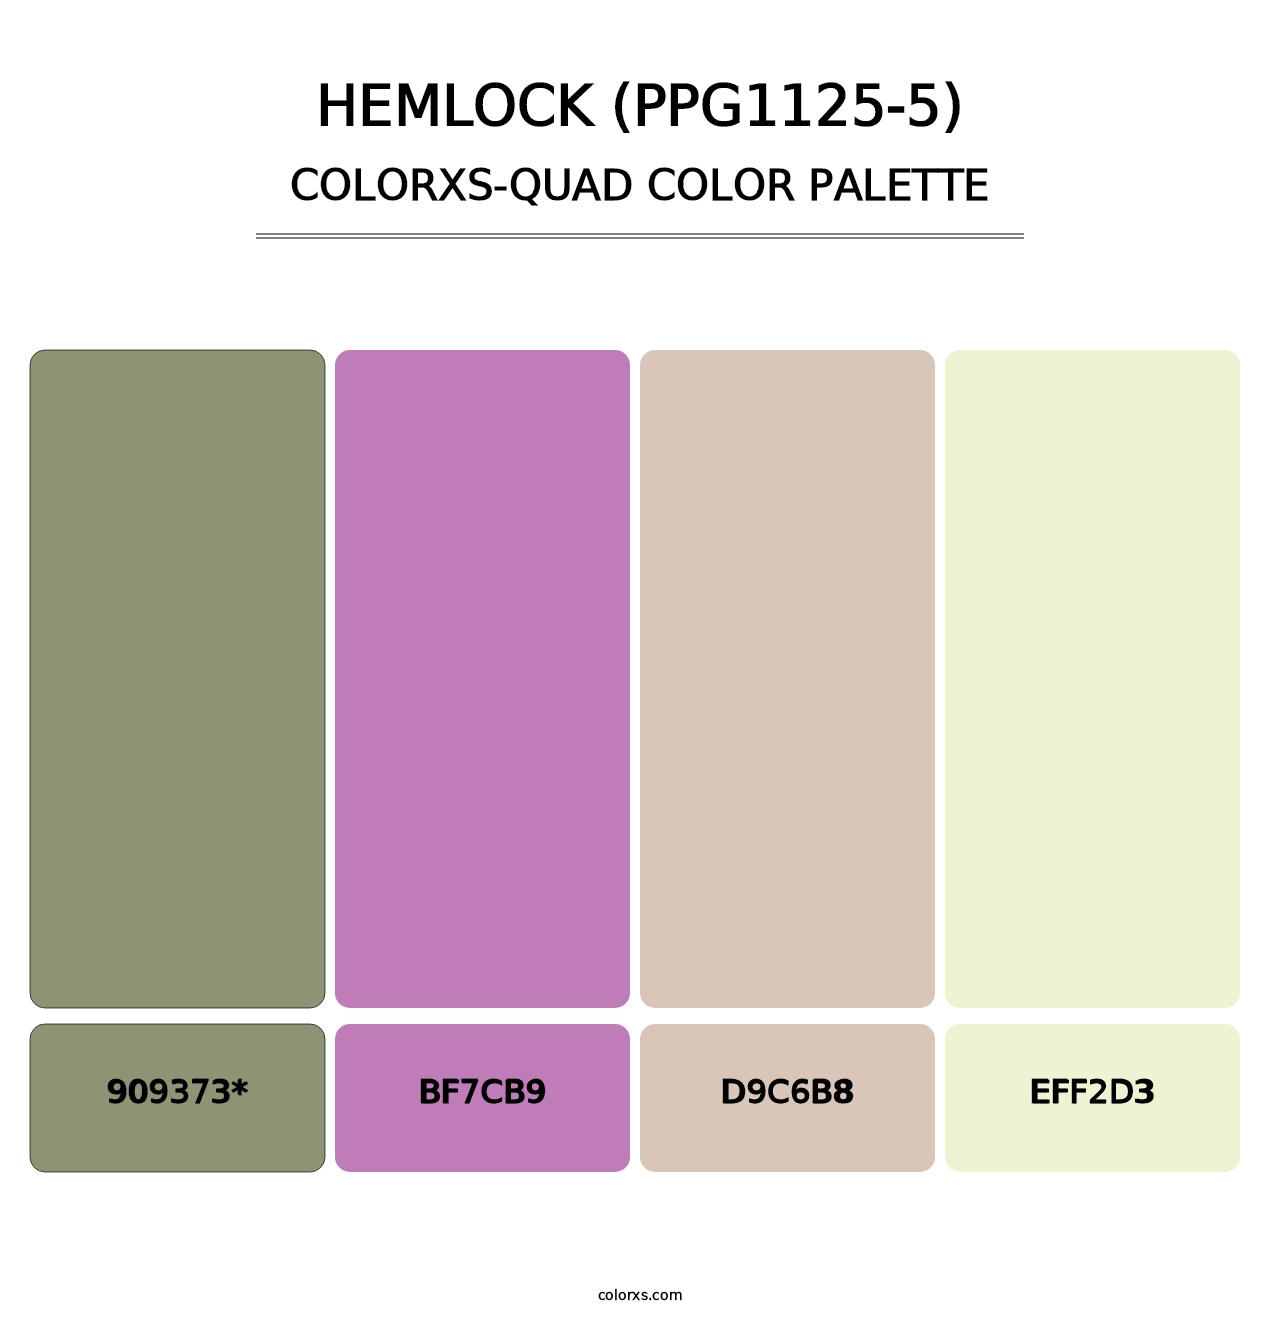 Hemlock (PPG1125-5) - Colorxs Quad Palette